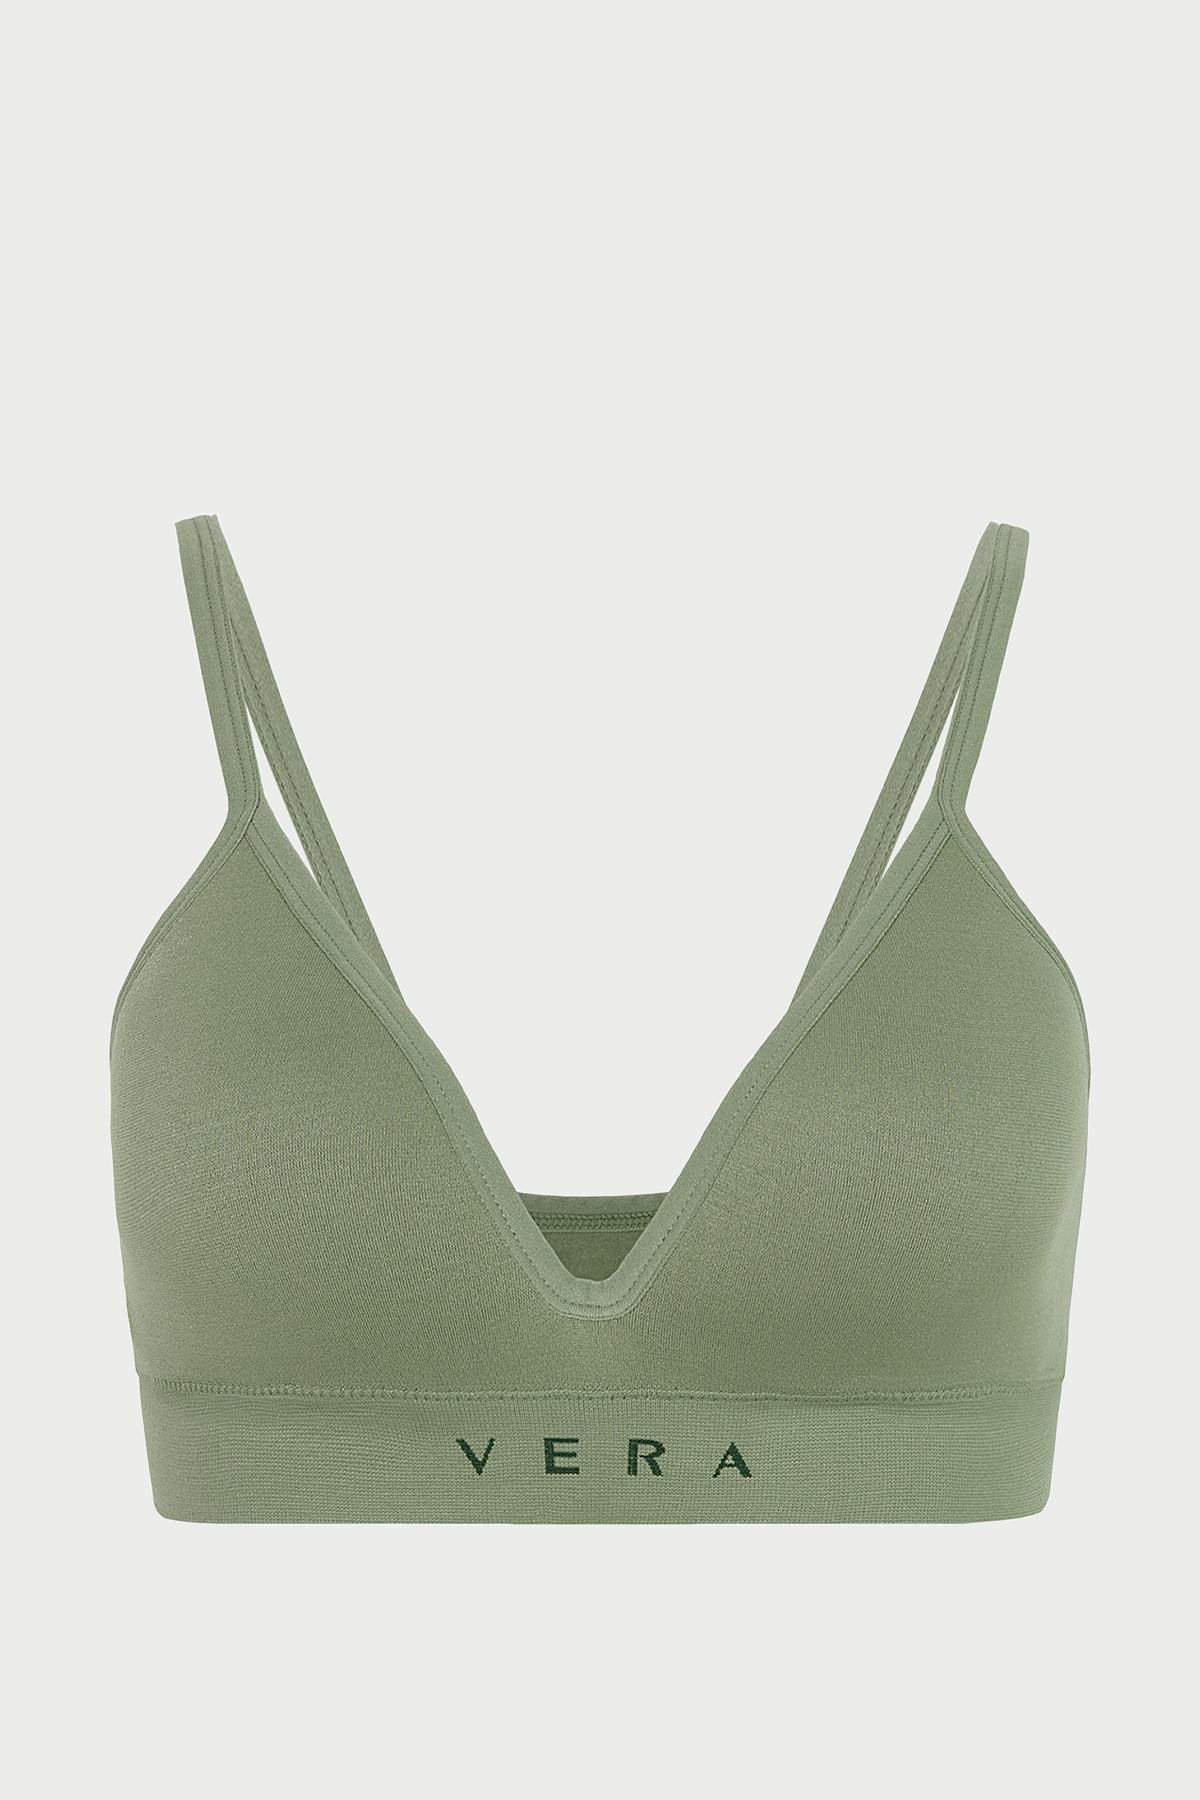 Áo ngực nữ Wireless Vera by Chipu Nylon trơn - C0003